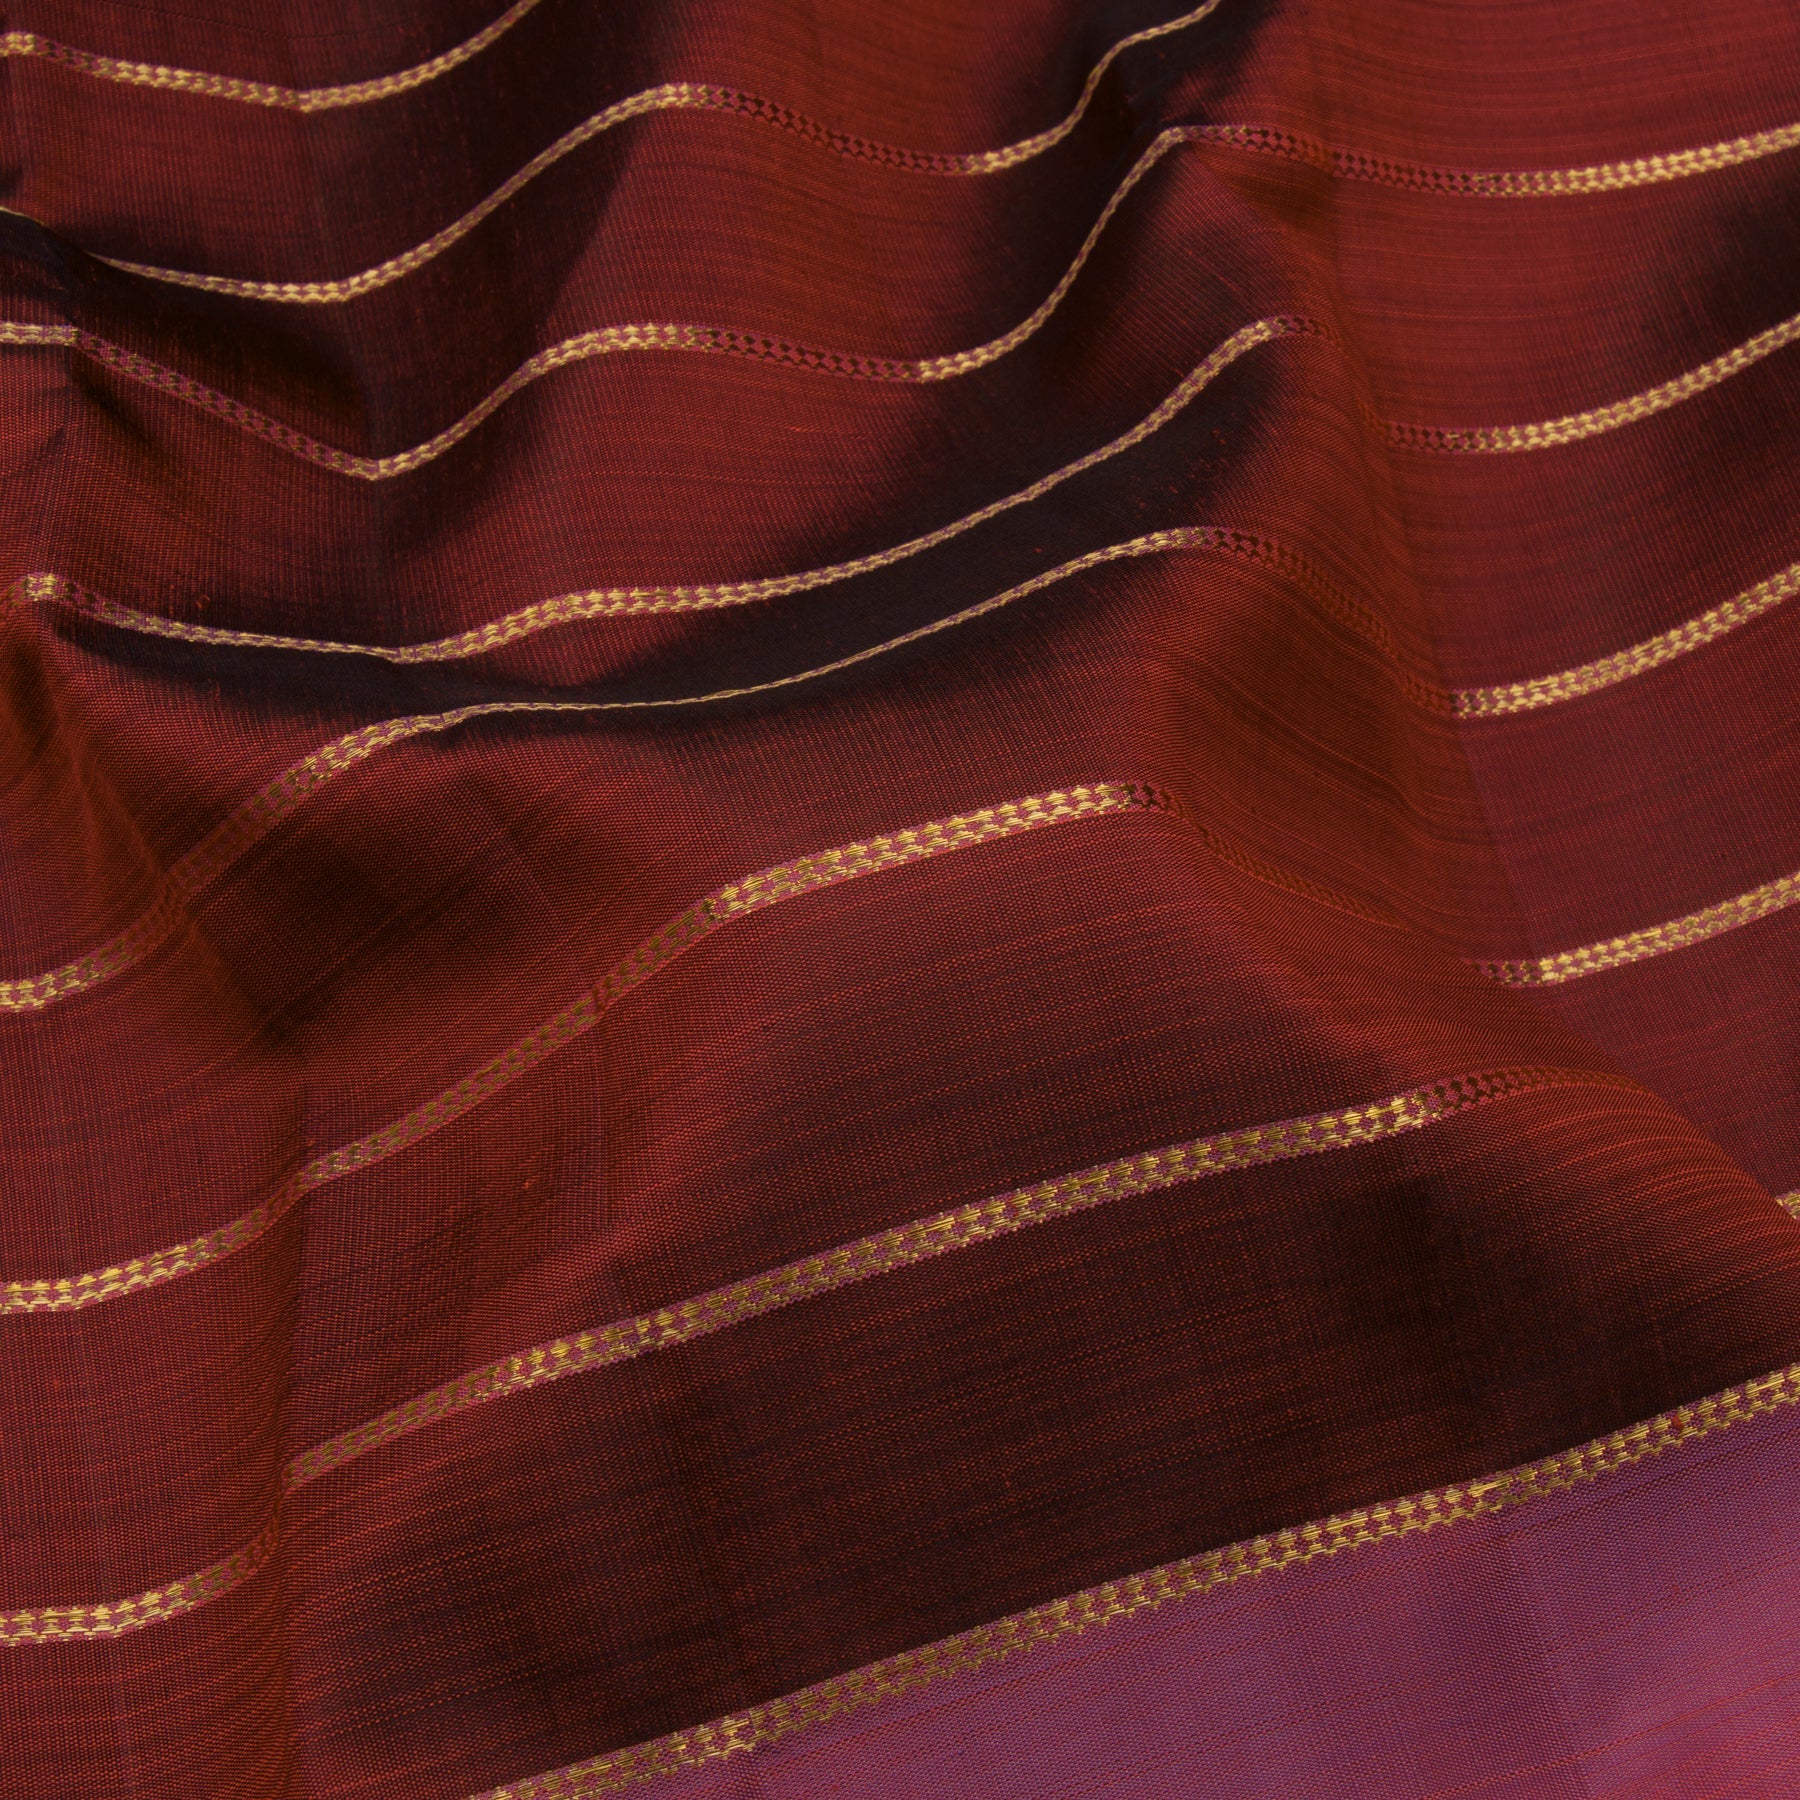 Kanakavalli Kanjivaram Silk Sari 23-595-HS001-10579 - Fabric View